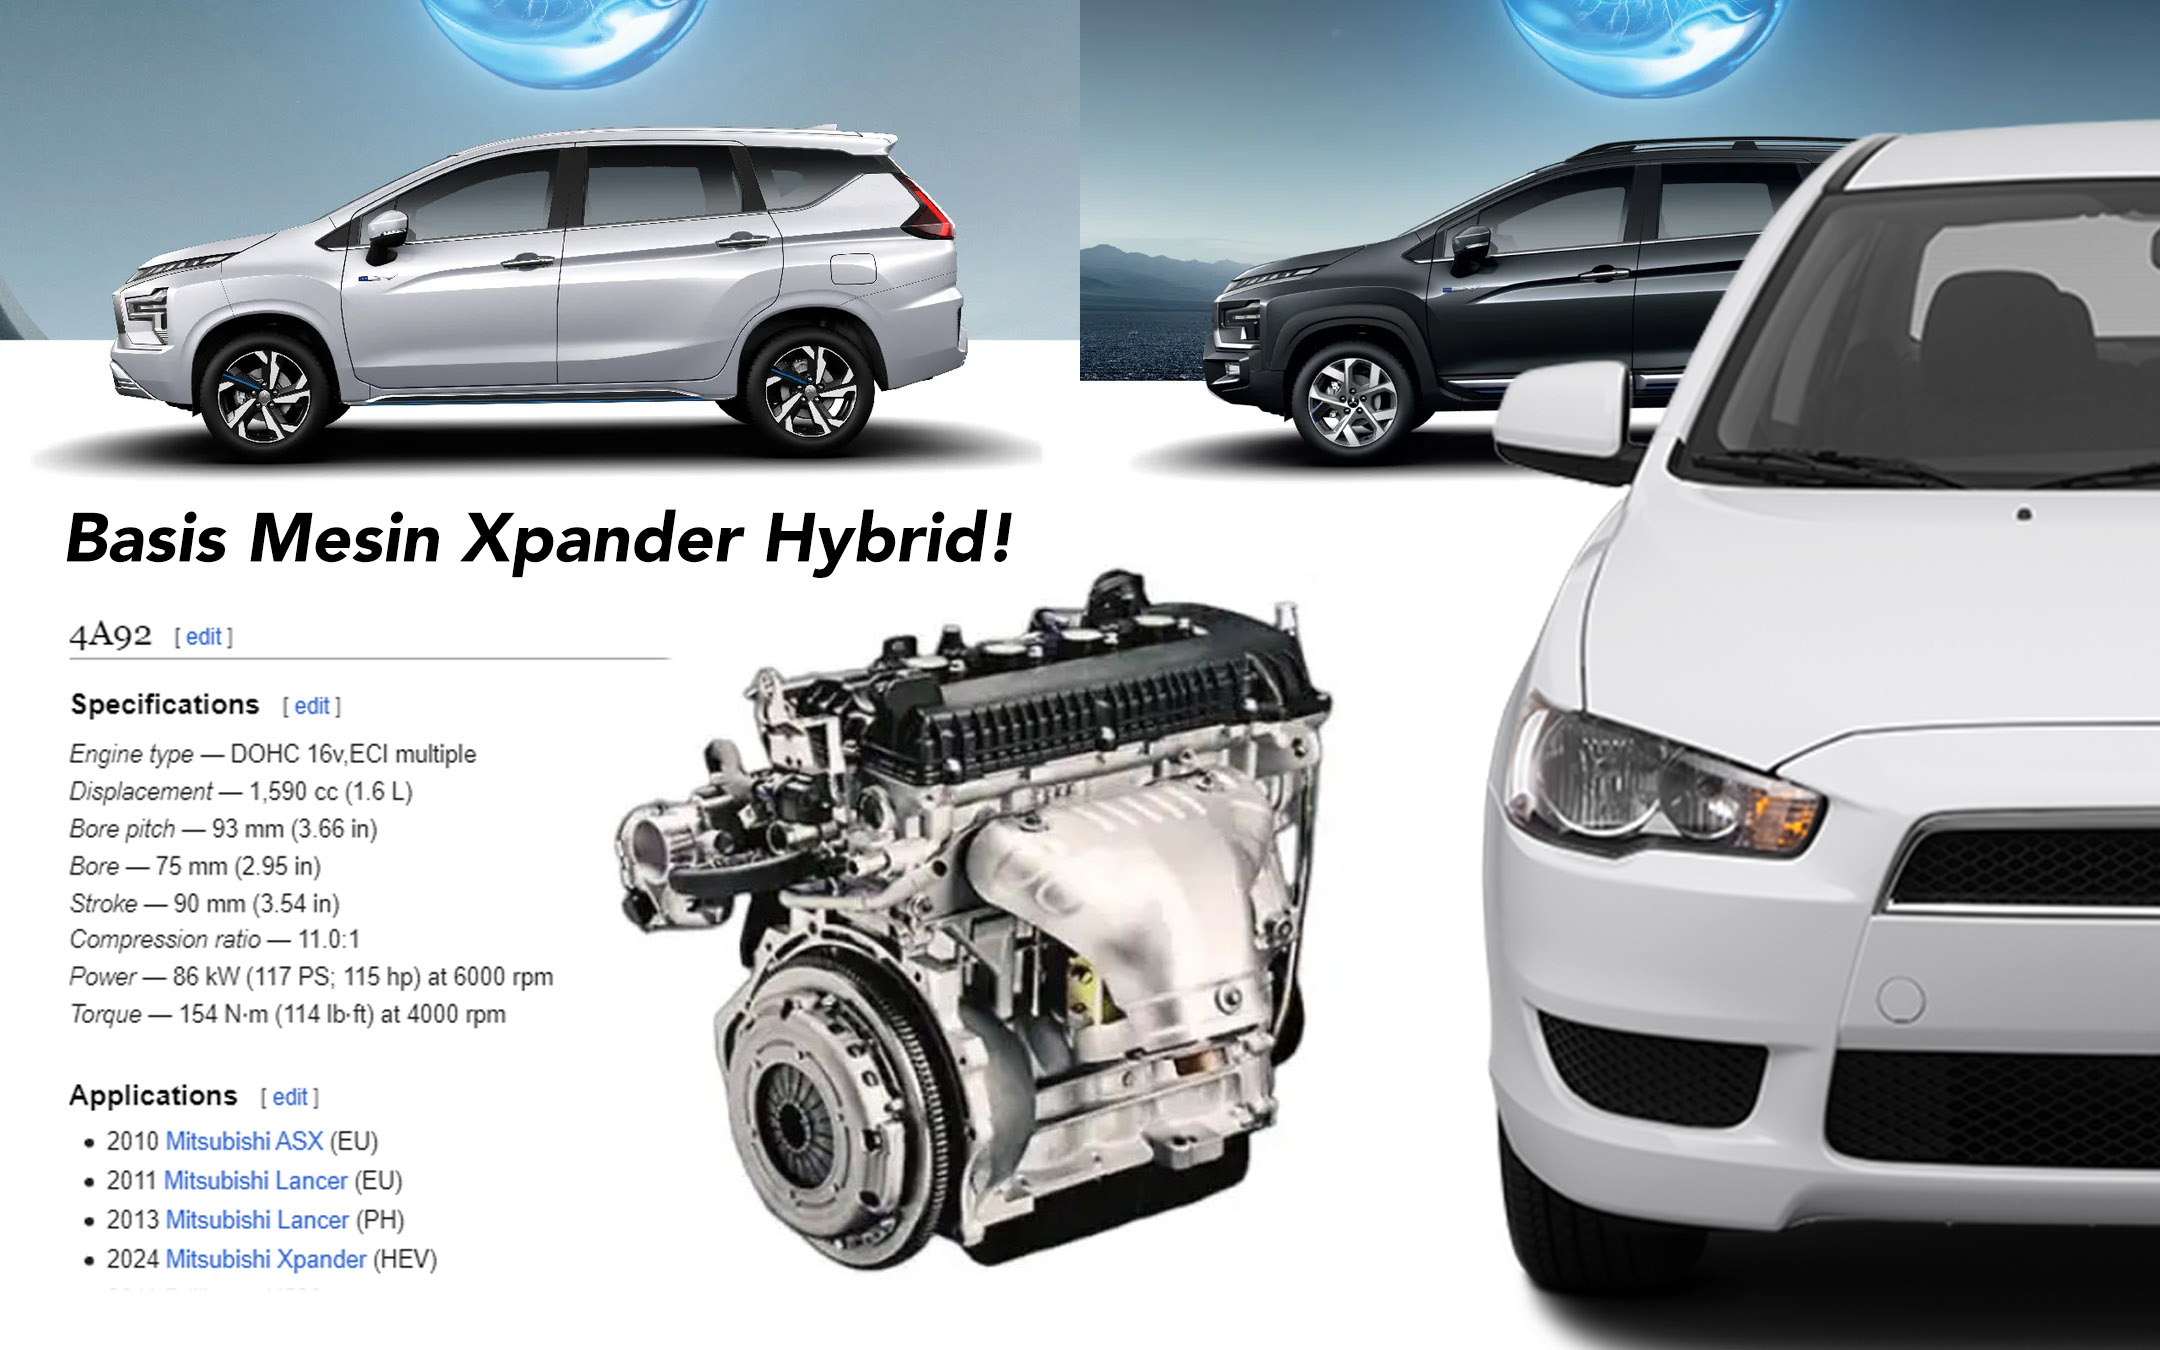 Berita, 4a92: Bedah Teknologi Hybrid E:Motion Mitsubishi Xpander, Pakai Mesin Lancer?